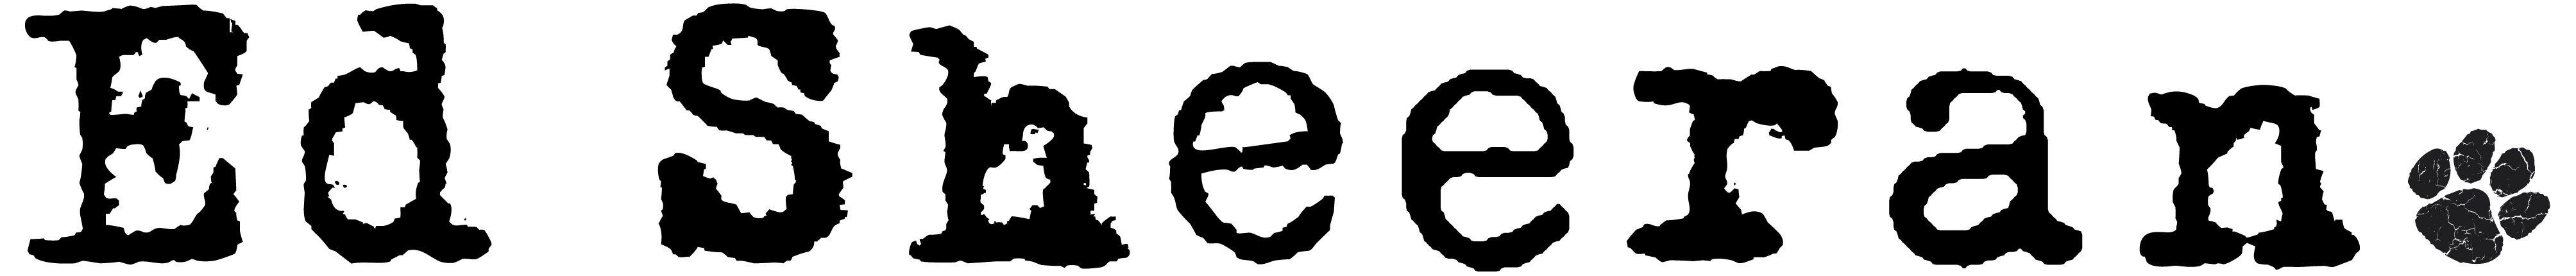 Ed Sheeran Logo - Ed Sheeran